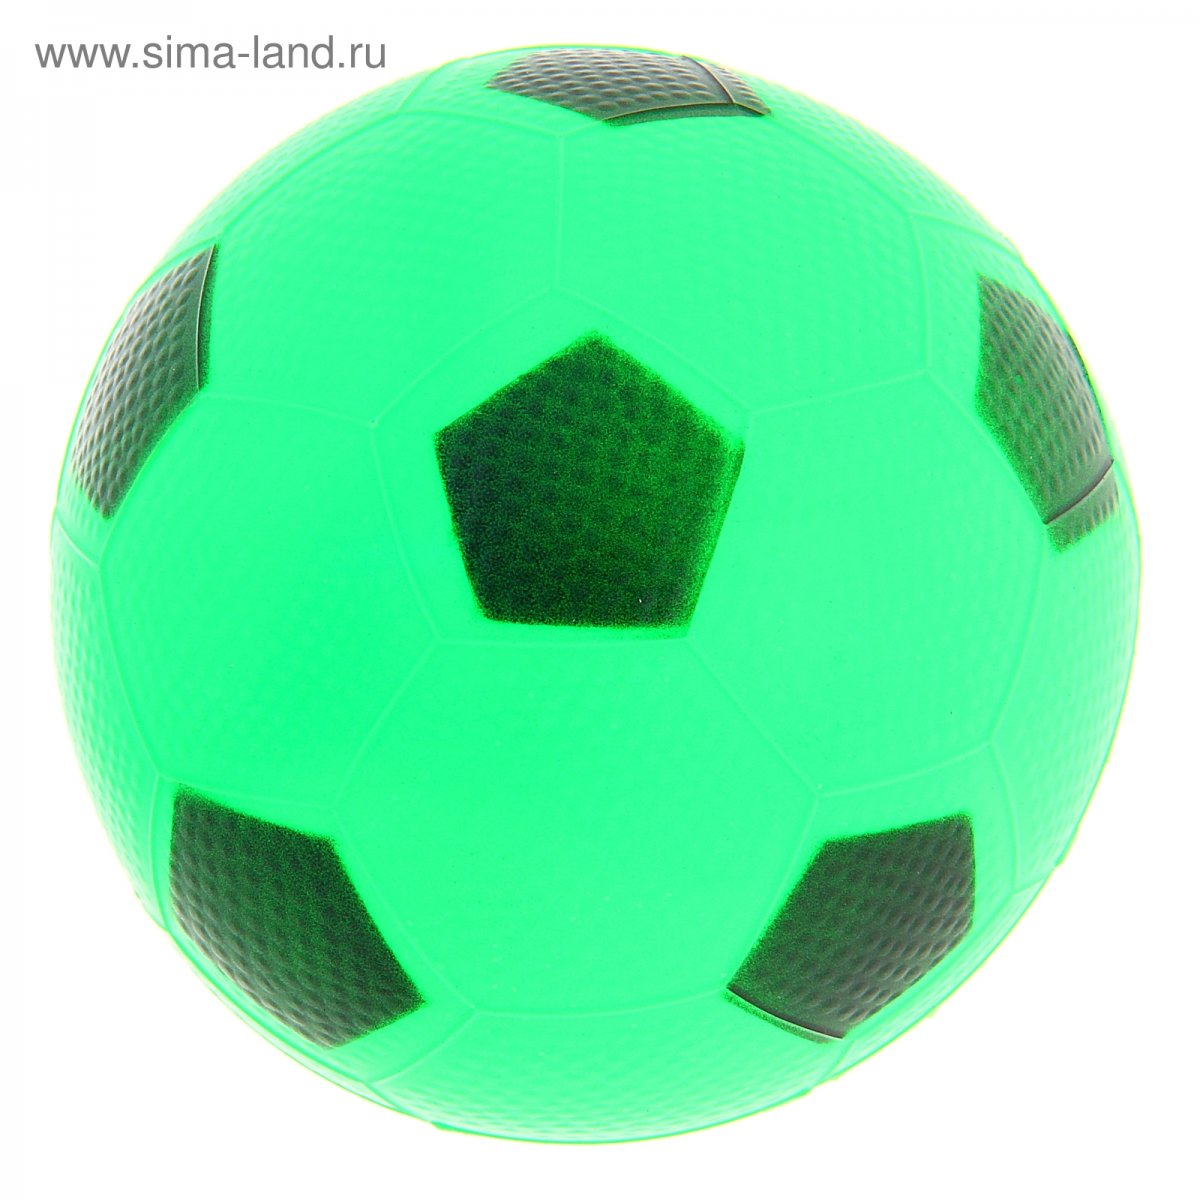 Футбольный мяч демикс